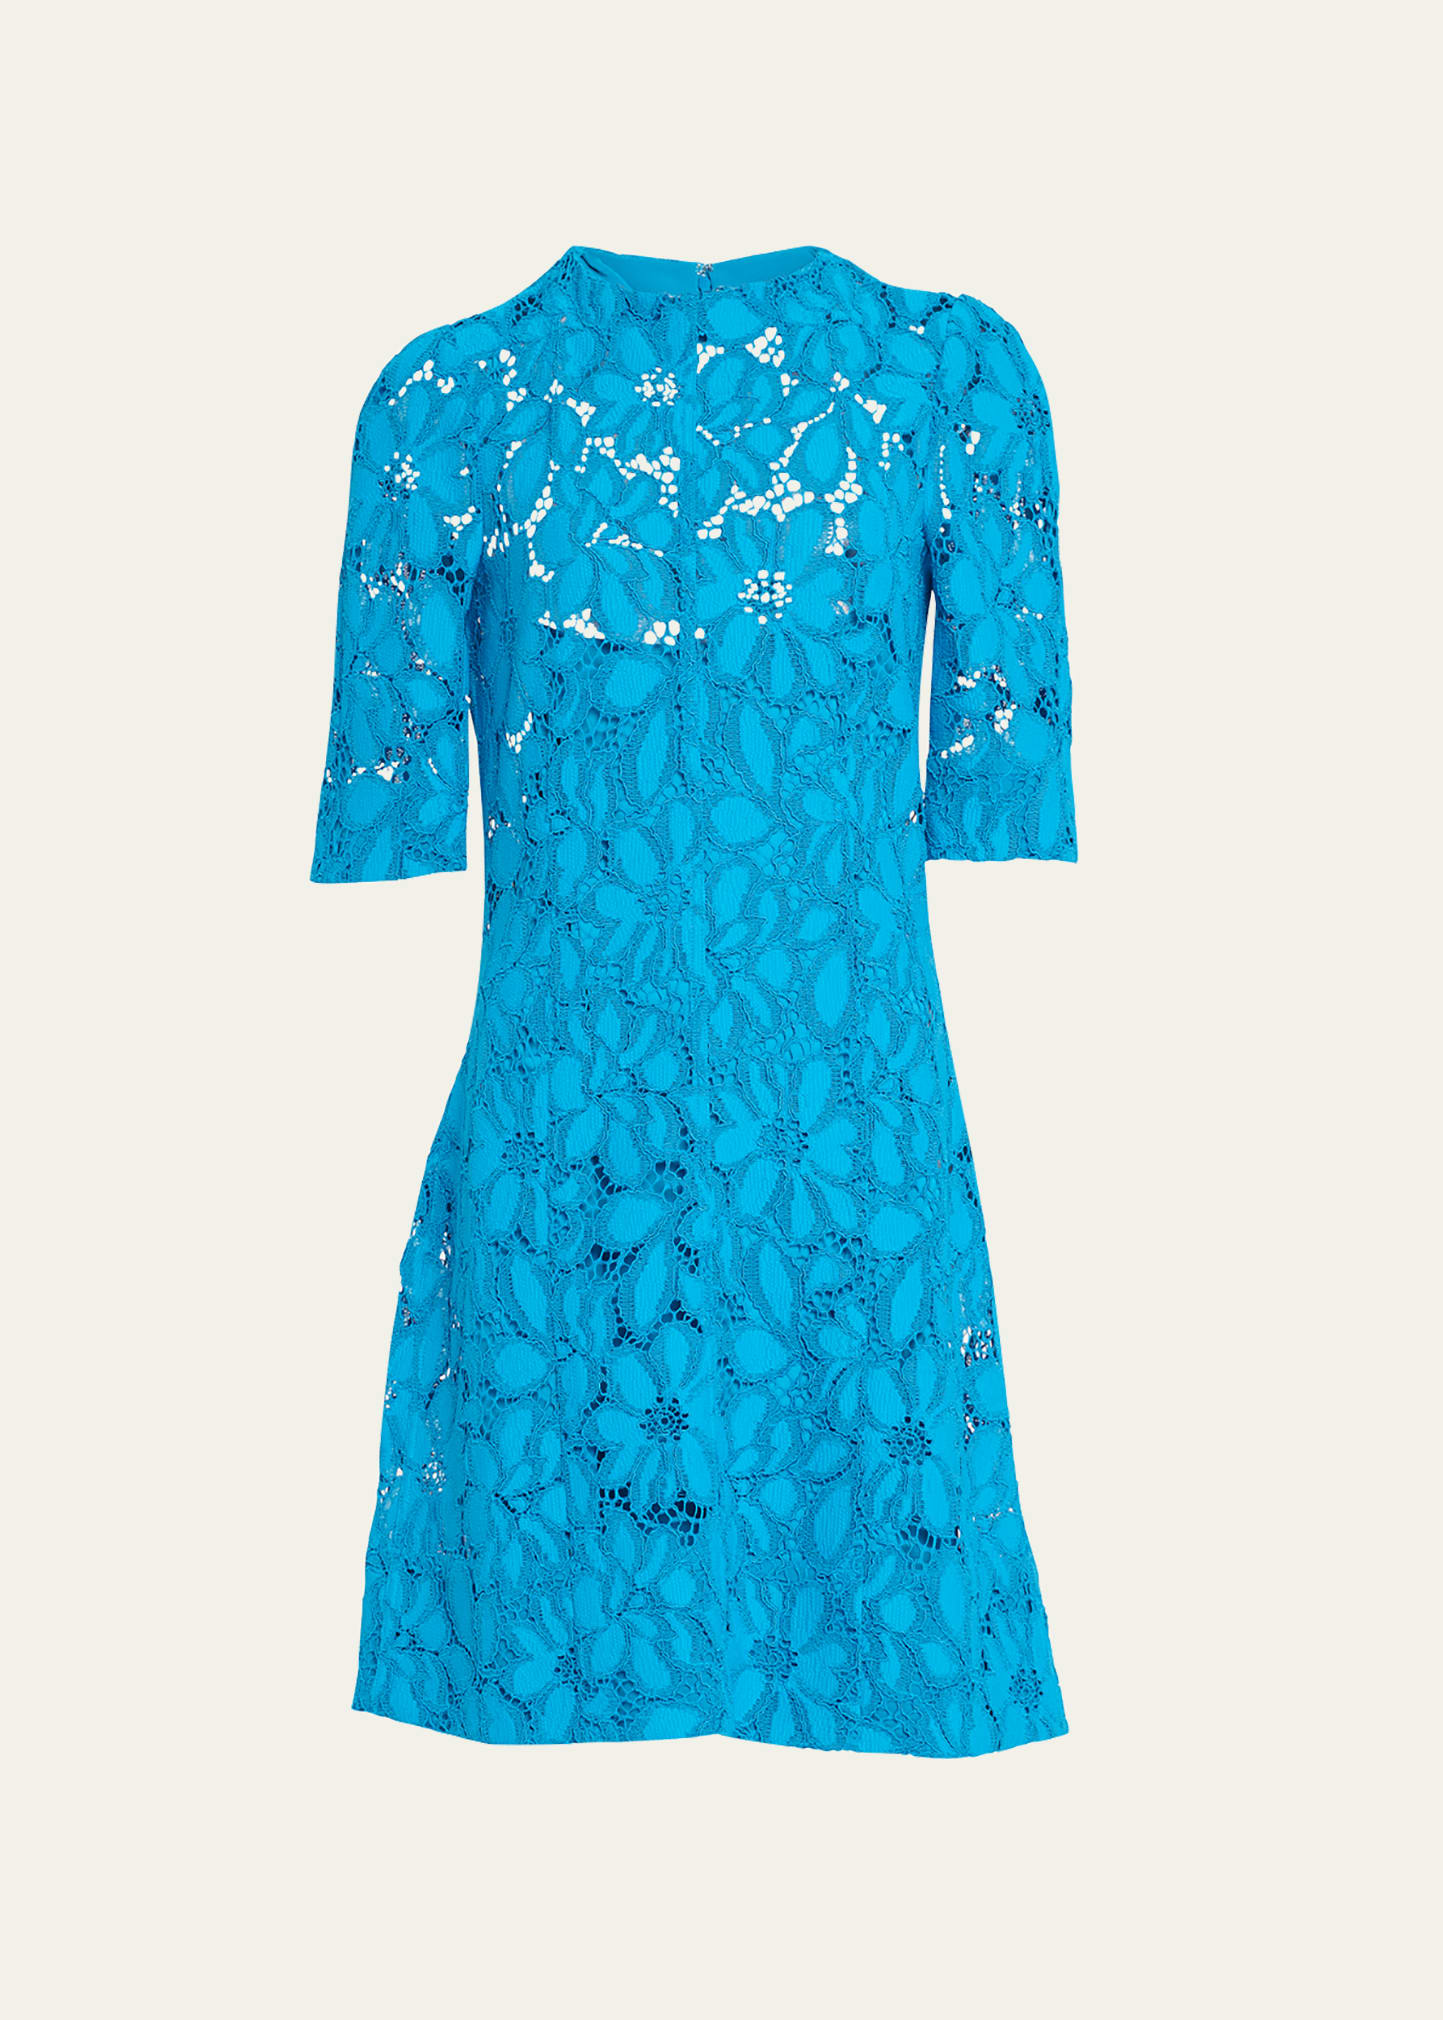 Proenza Schouler Floral Lace Short Suiting Dress